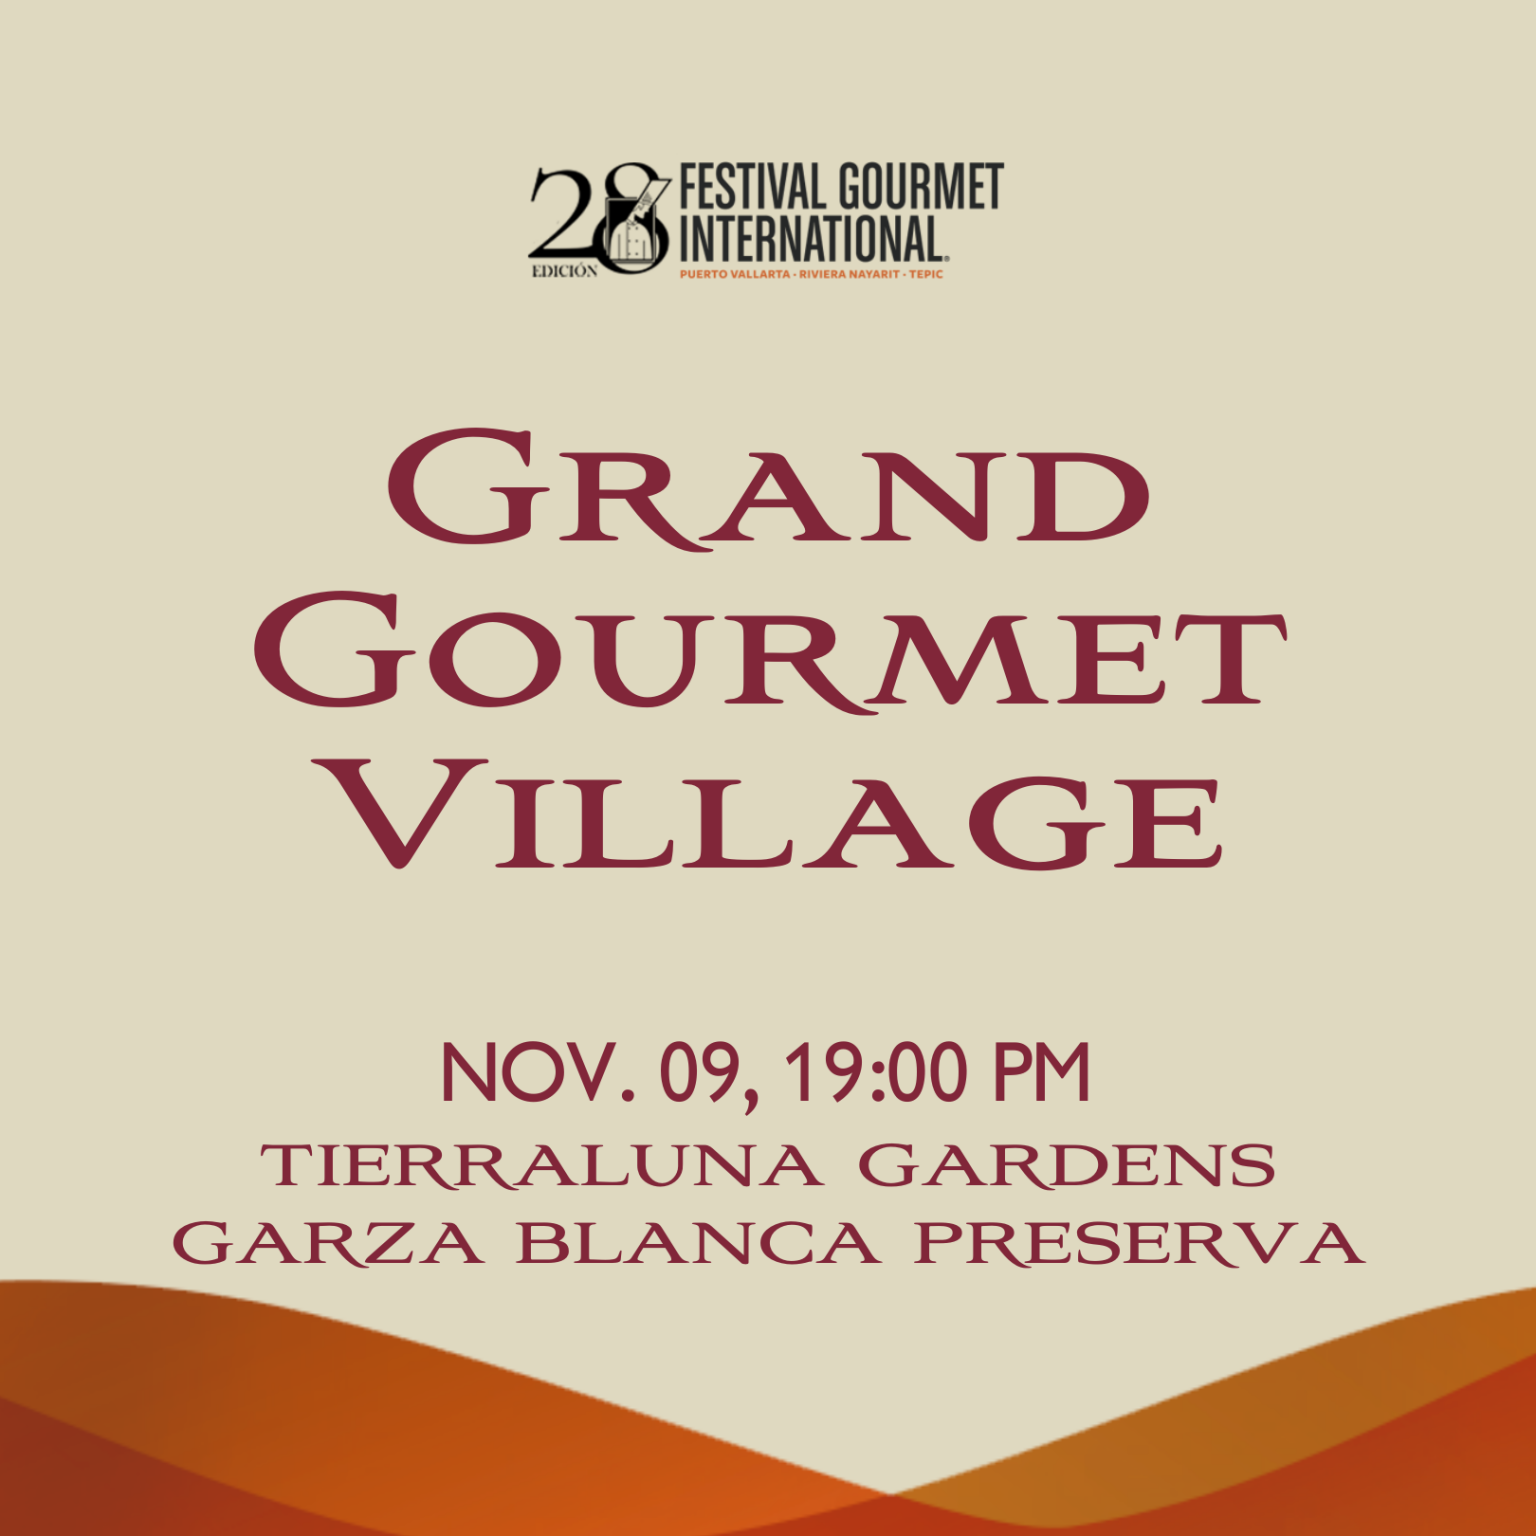 Grand Gourmet Village 1536x1536 